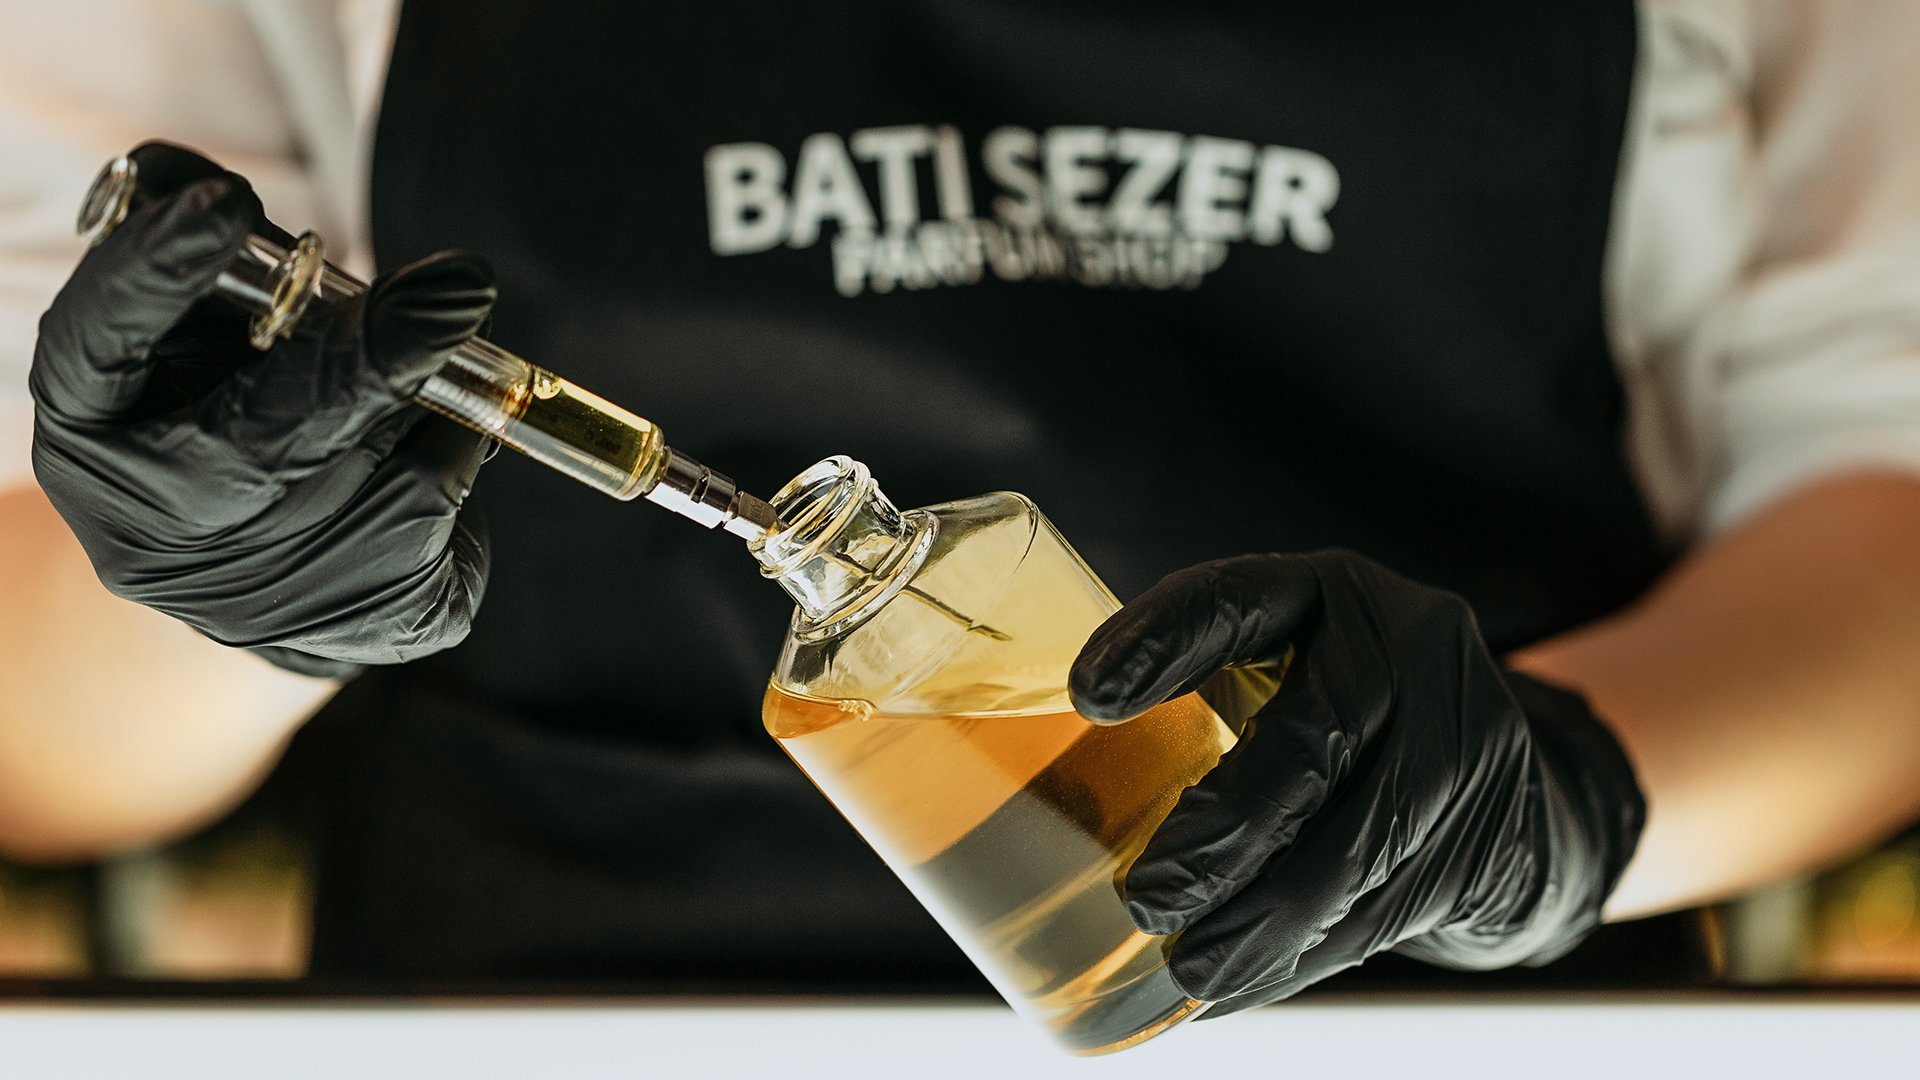 BATISEZER PARFUMSHOP / Özel Parfumler ve Setler